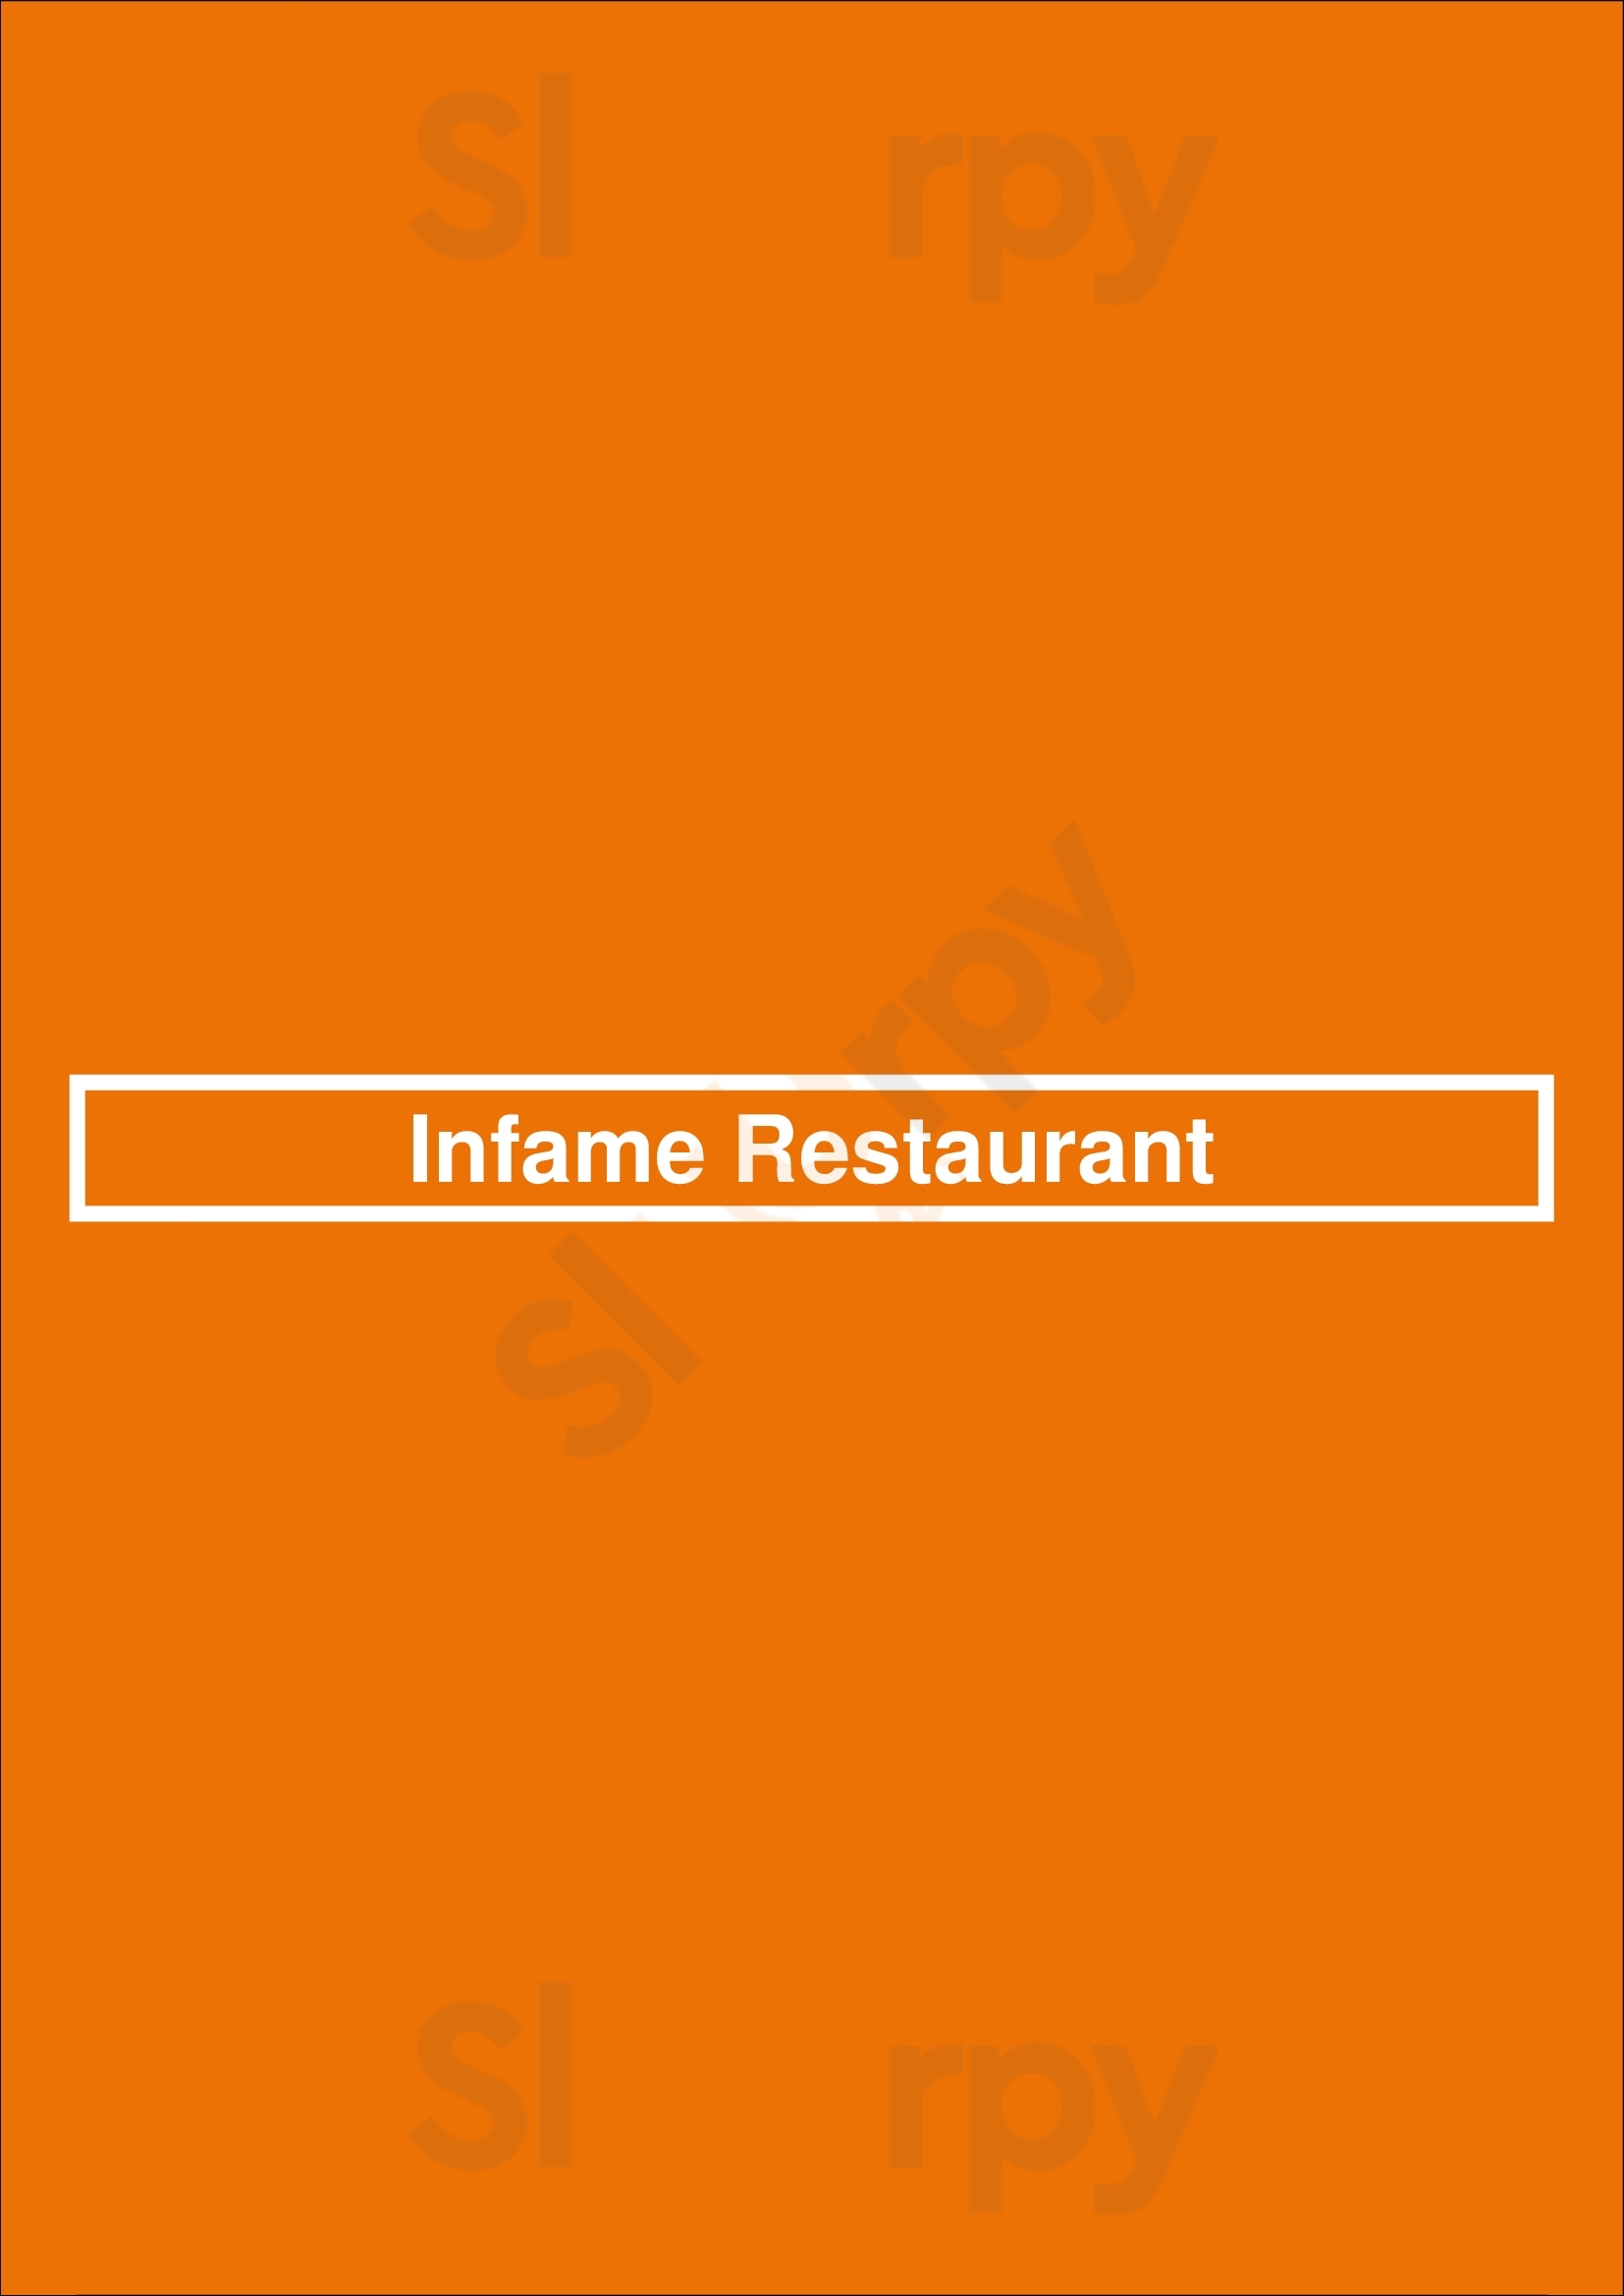 Infame Restaurant Lisboa Menu - 1